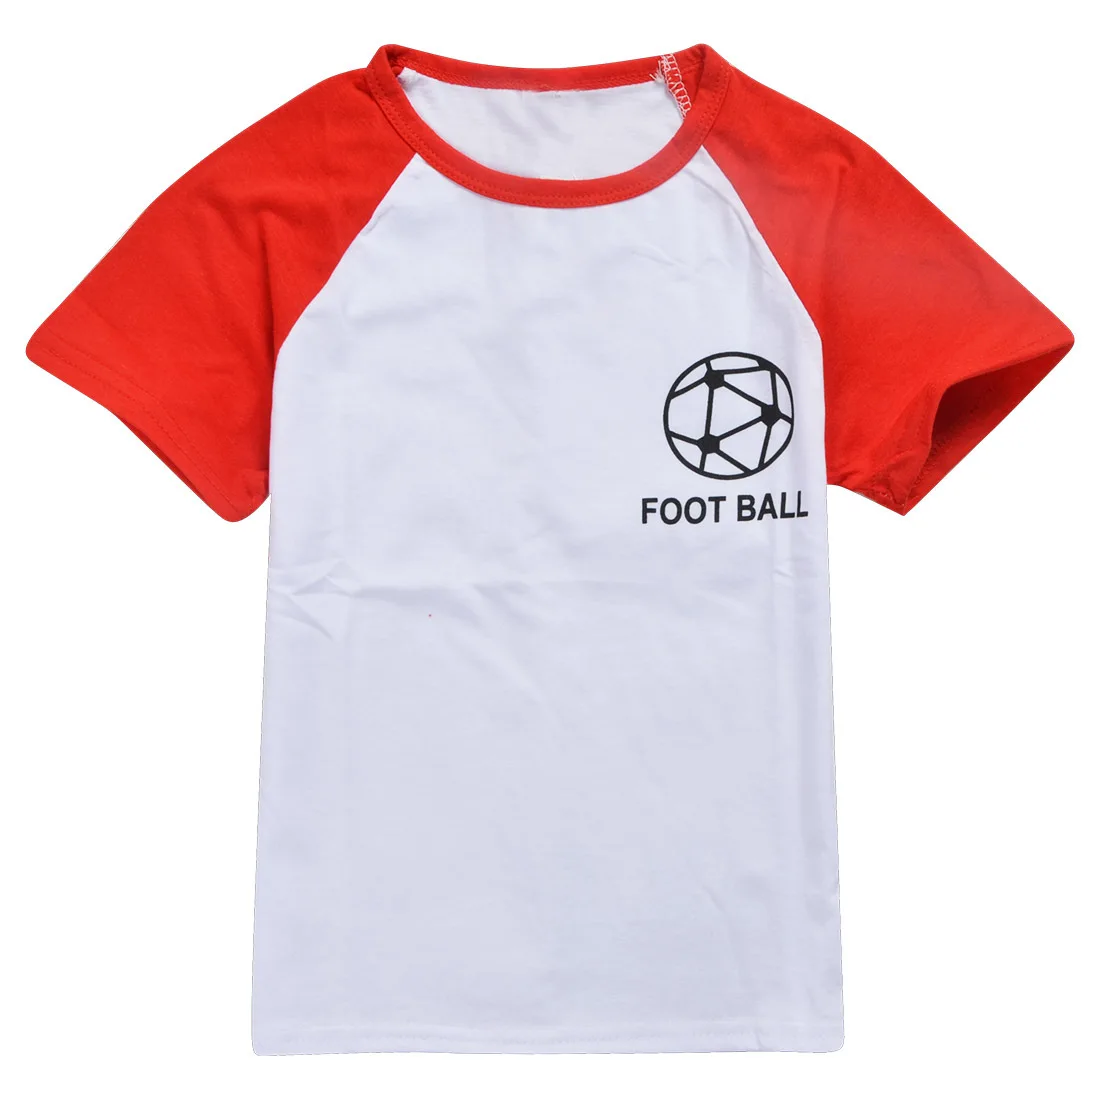 Детские шорты, футболки хлопковые футбольные футболки для мальчиков и девочек, футболки для От 4 до 12 лет, одежда с героями мультфильмов для маленьких мальчиков